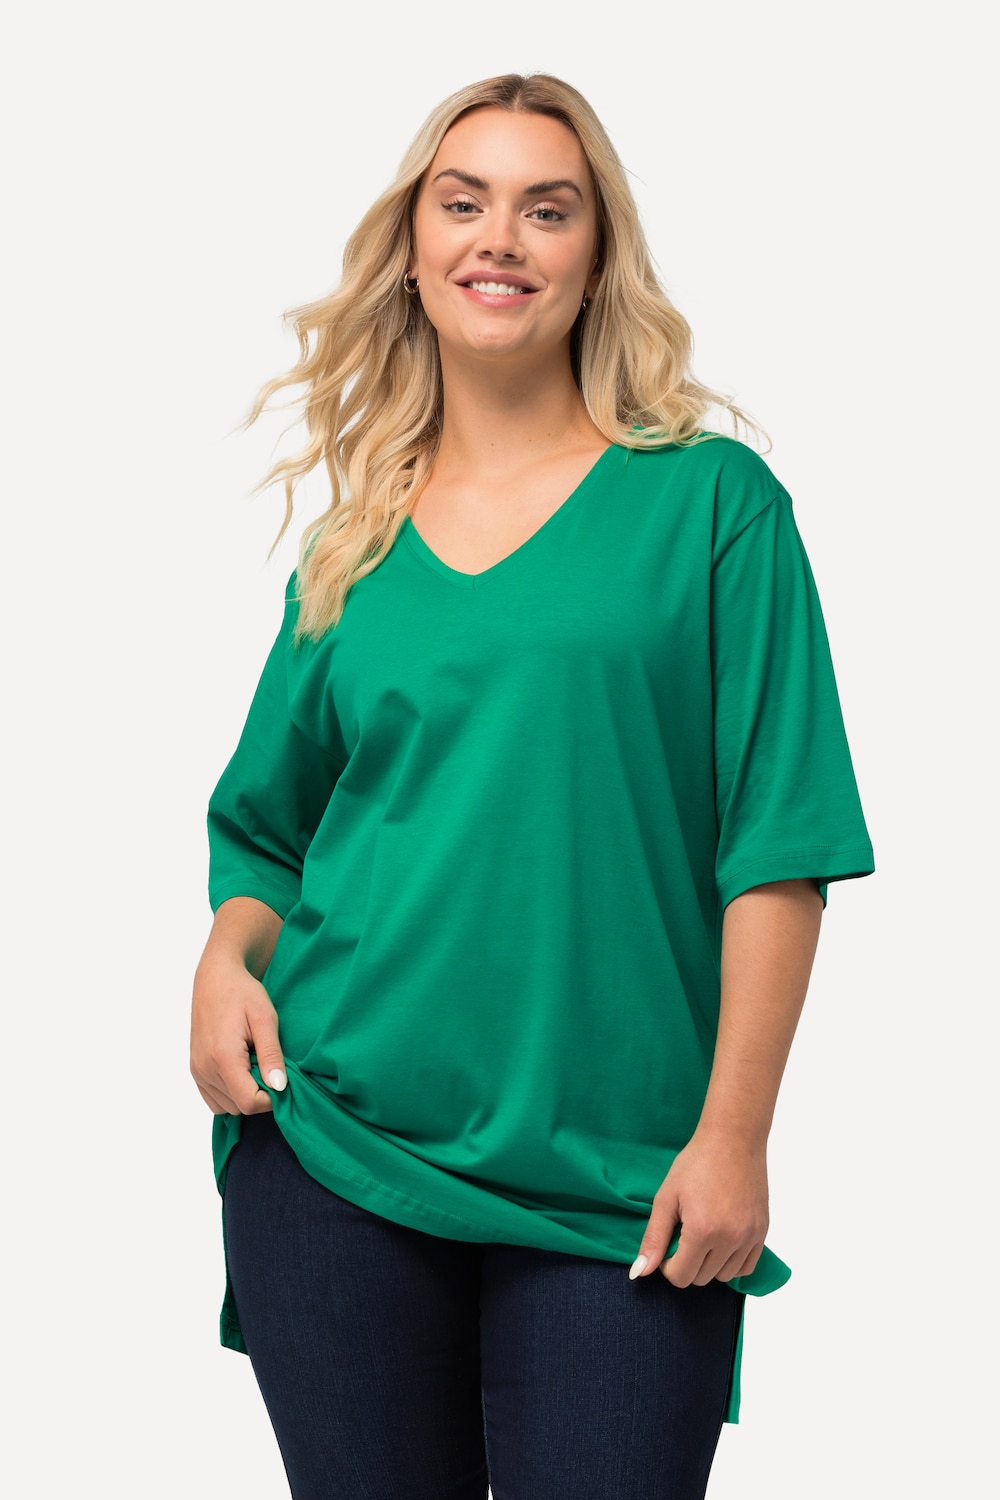 Grote Maten T-Shirt, Dames, groen, Maat: 42/44, Katoen/Viscose, Ulla Popken